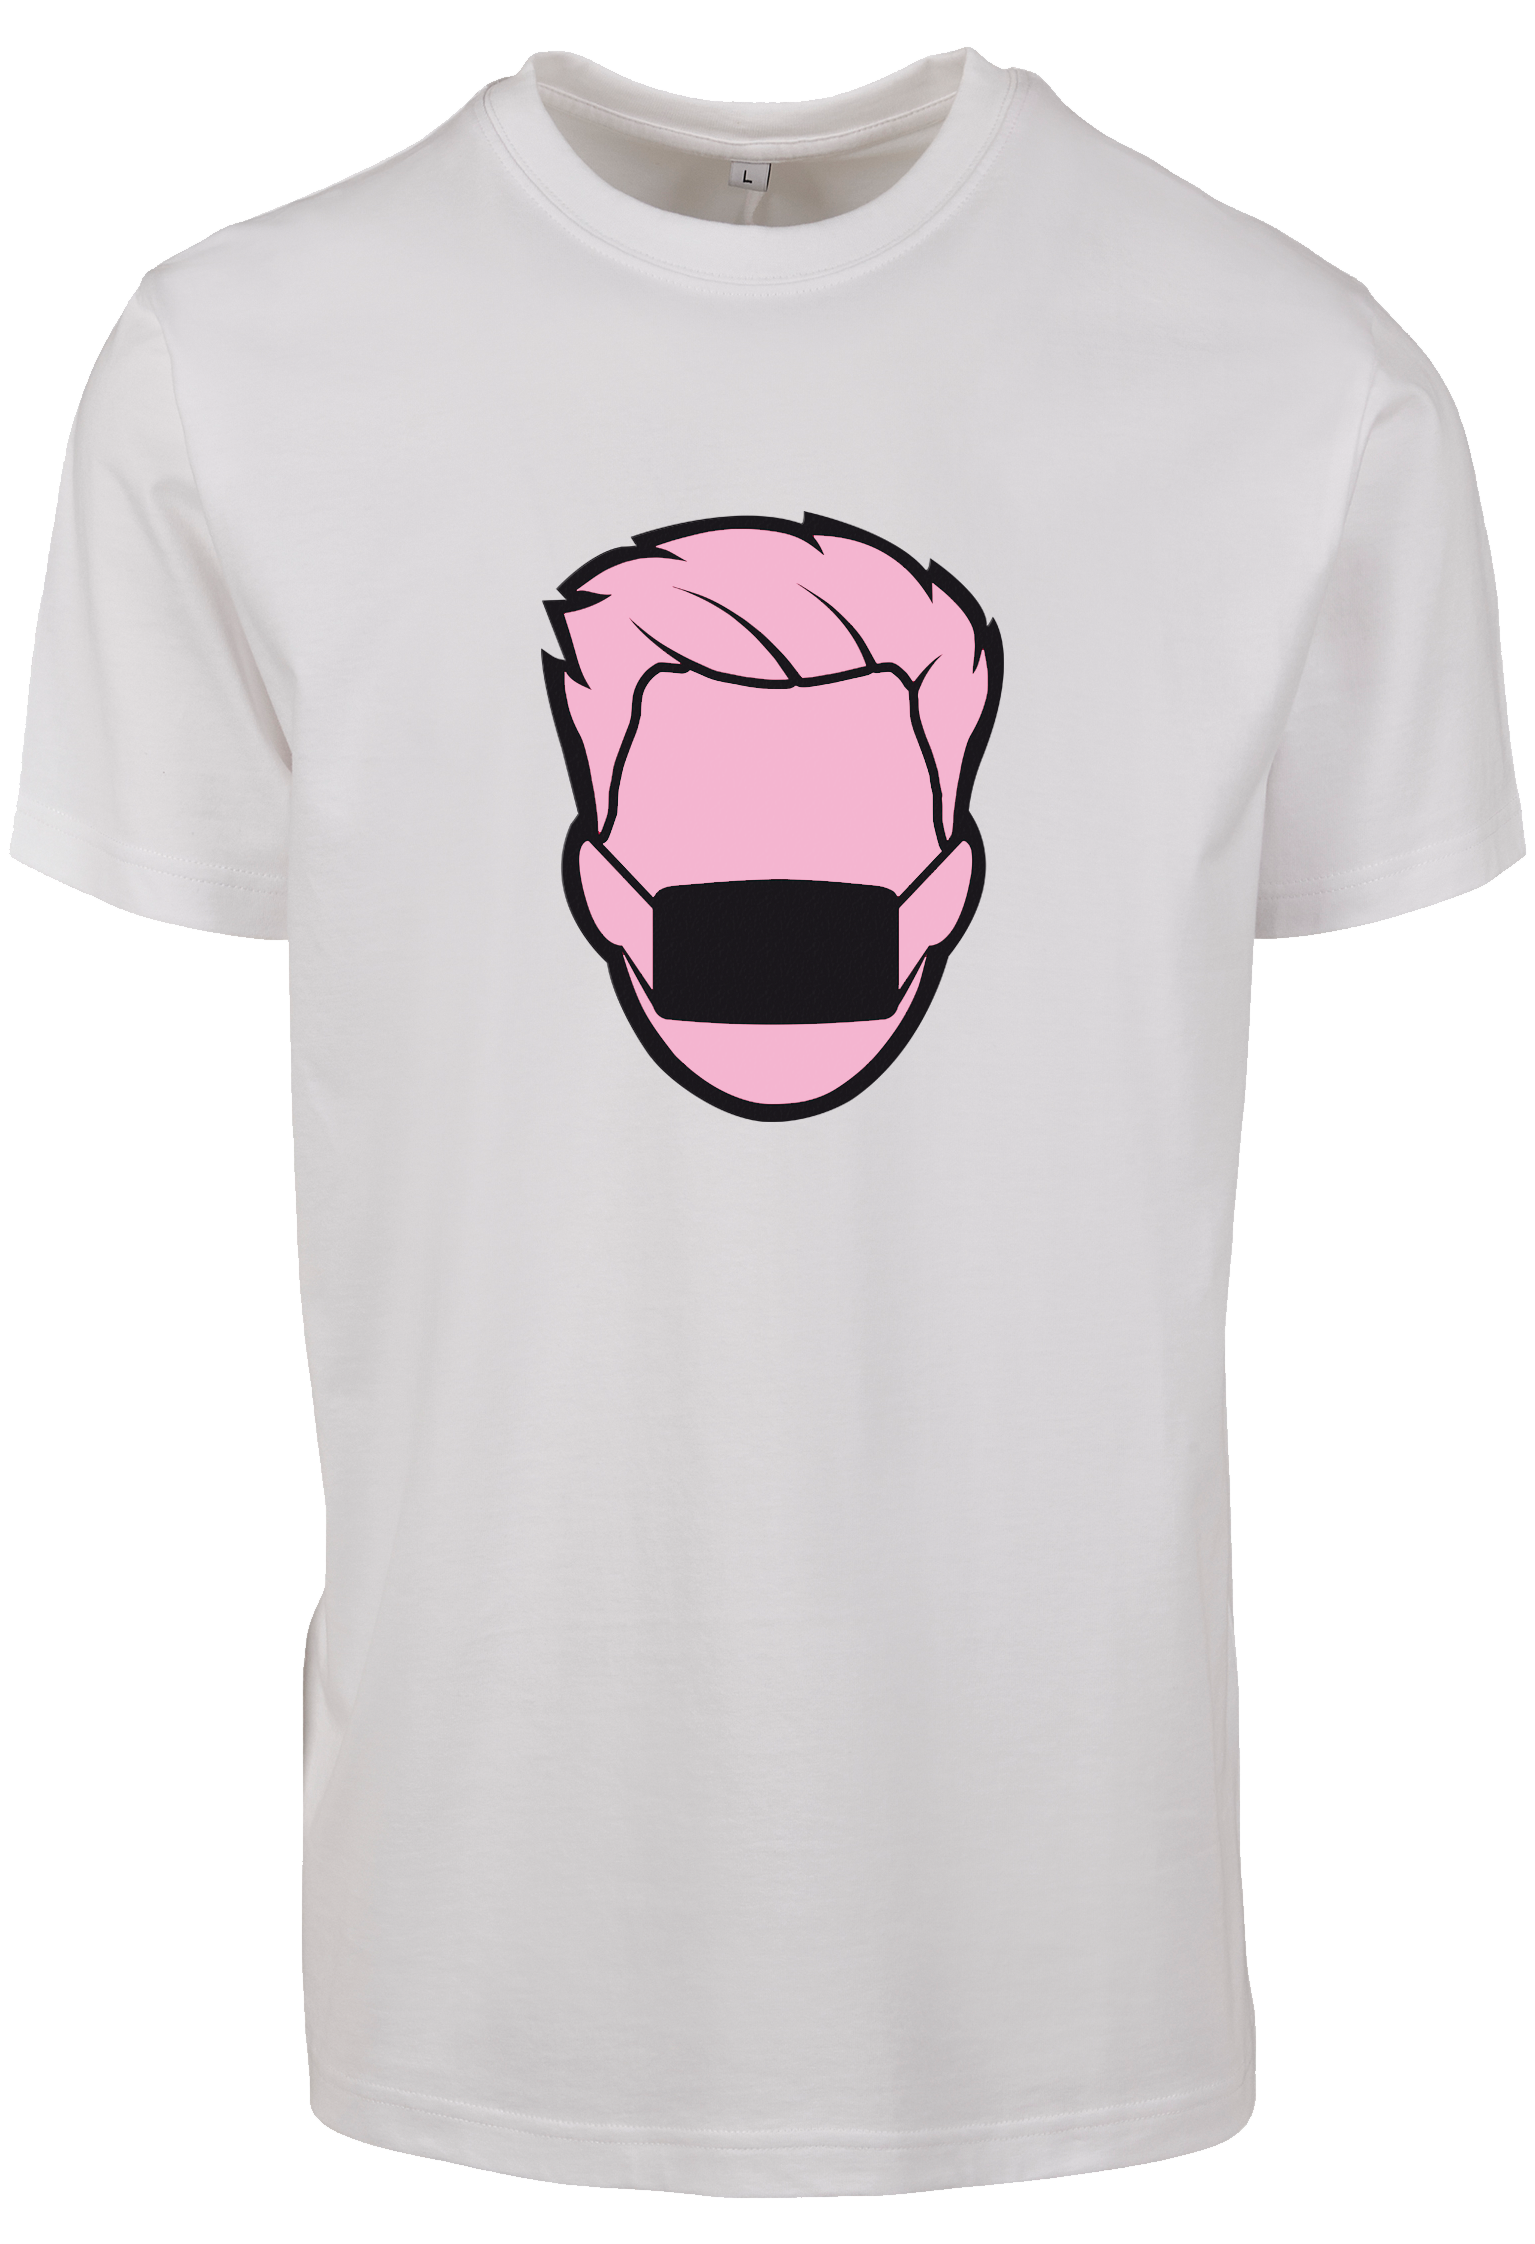 Pinkbrenda white T-Shirt